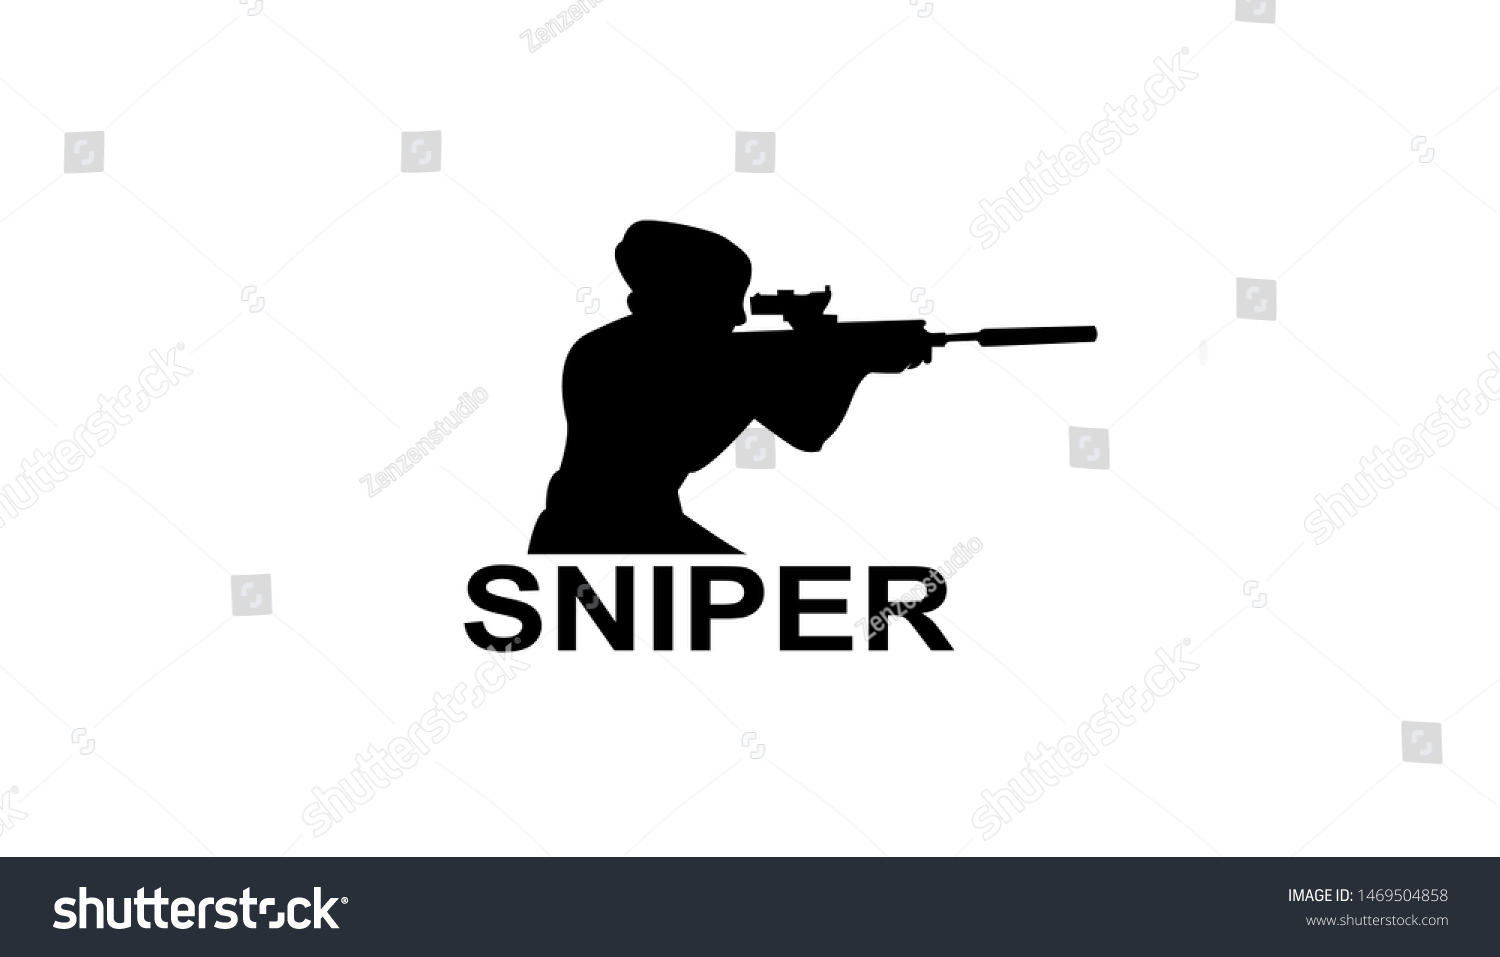 Sniper Emblem Sports Teams Sniper Club Stock Vector (Royalty Free ...